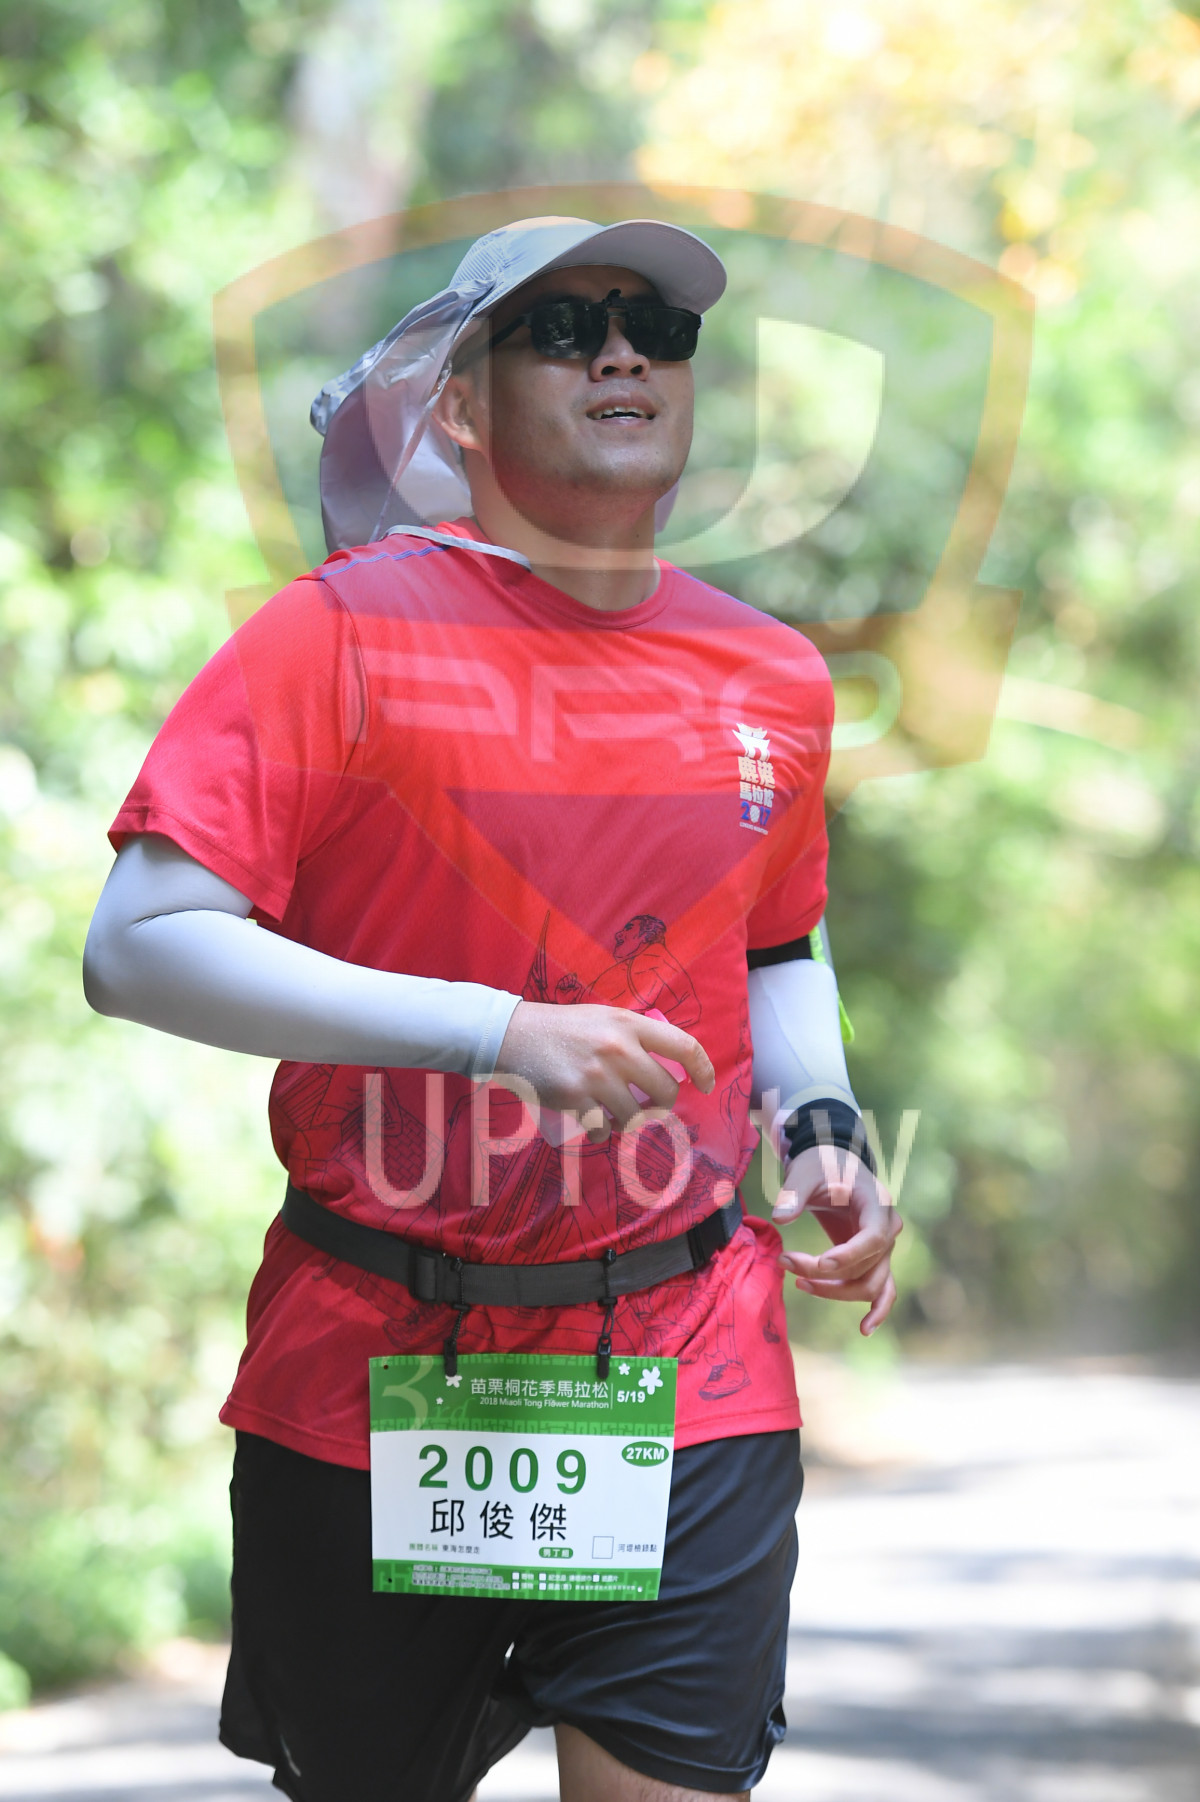 オ5/19,018 Mal Tong Fiower Marathon,27KM,2009,|綠色隧道1|中年人